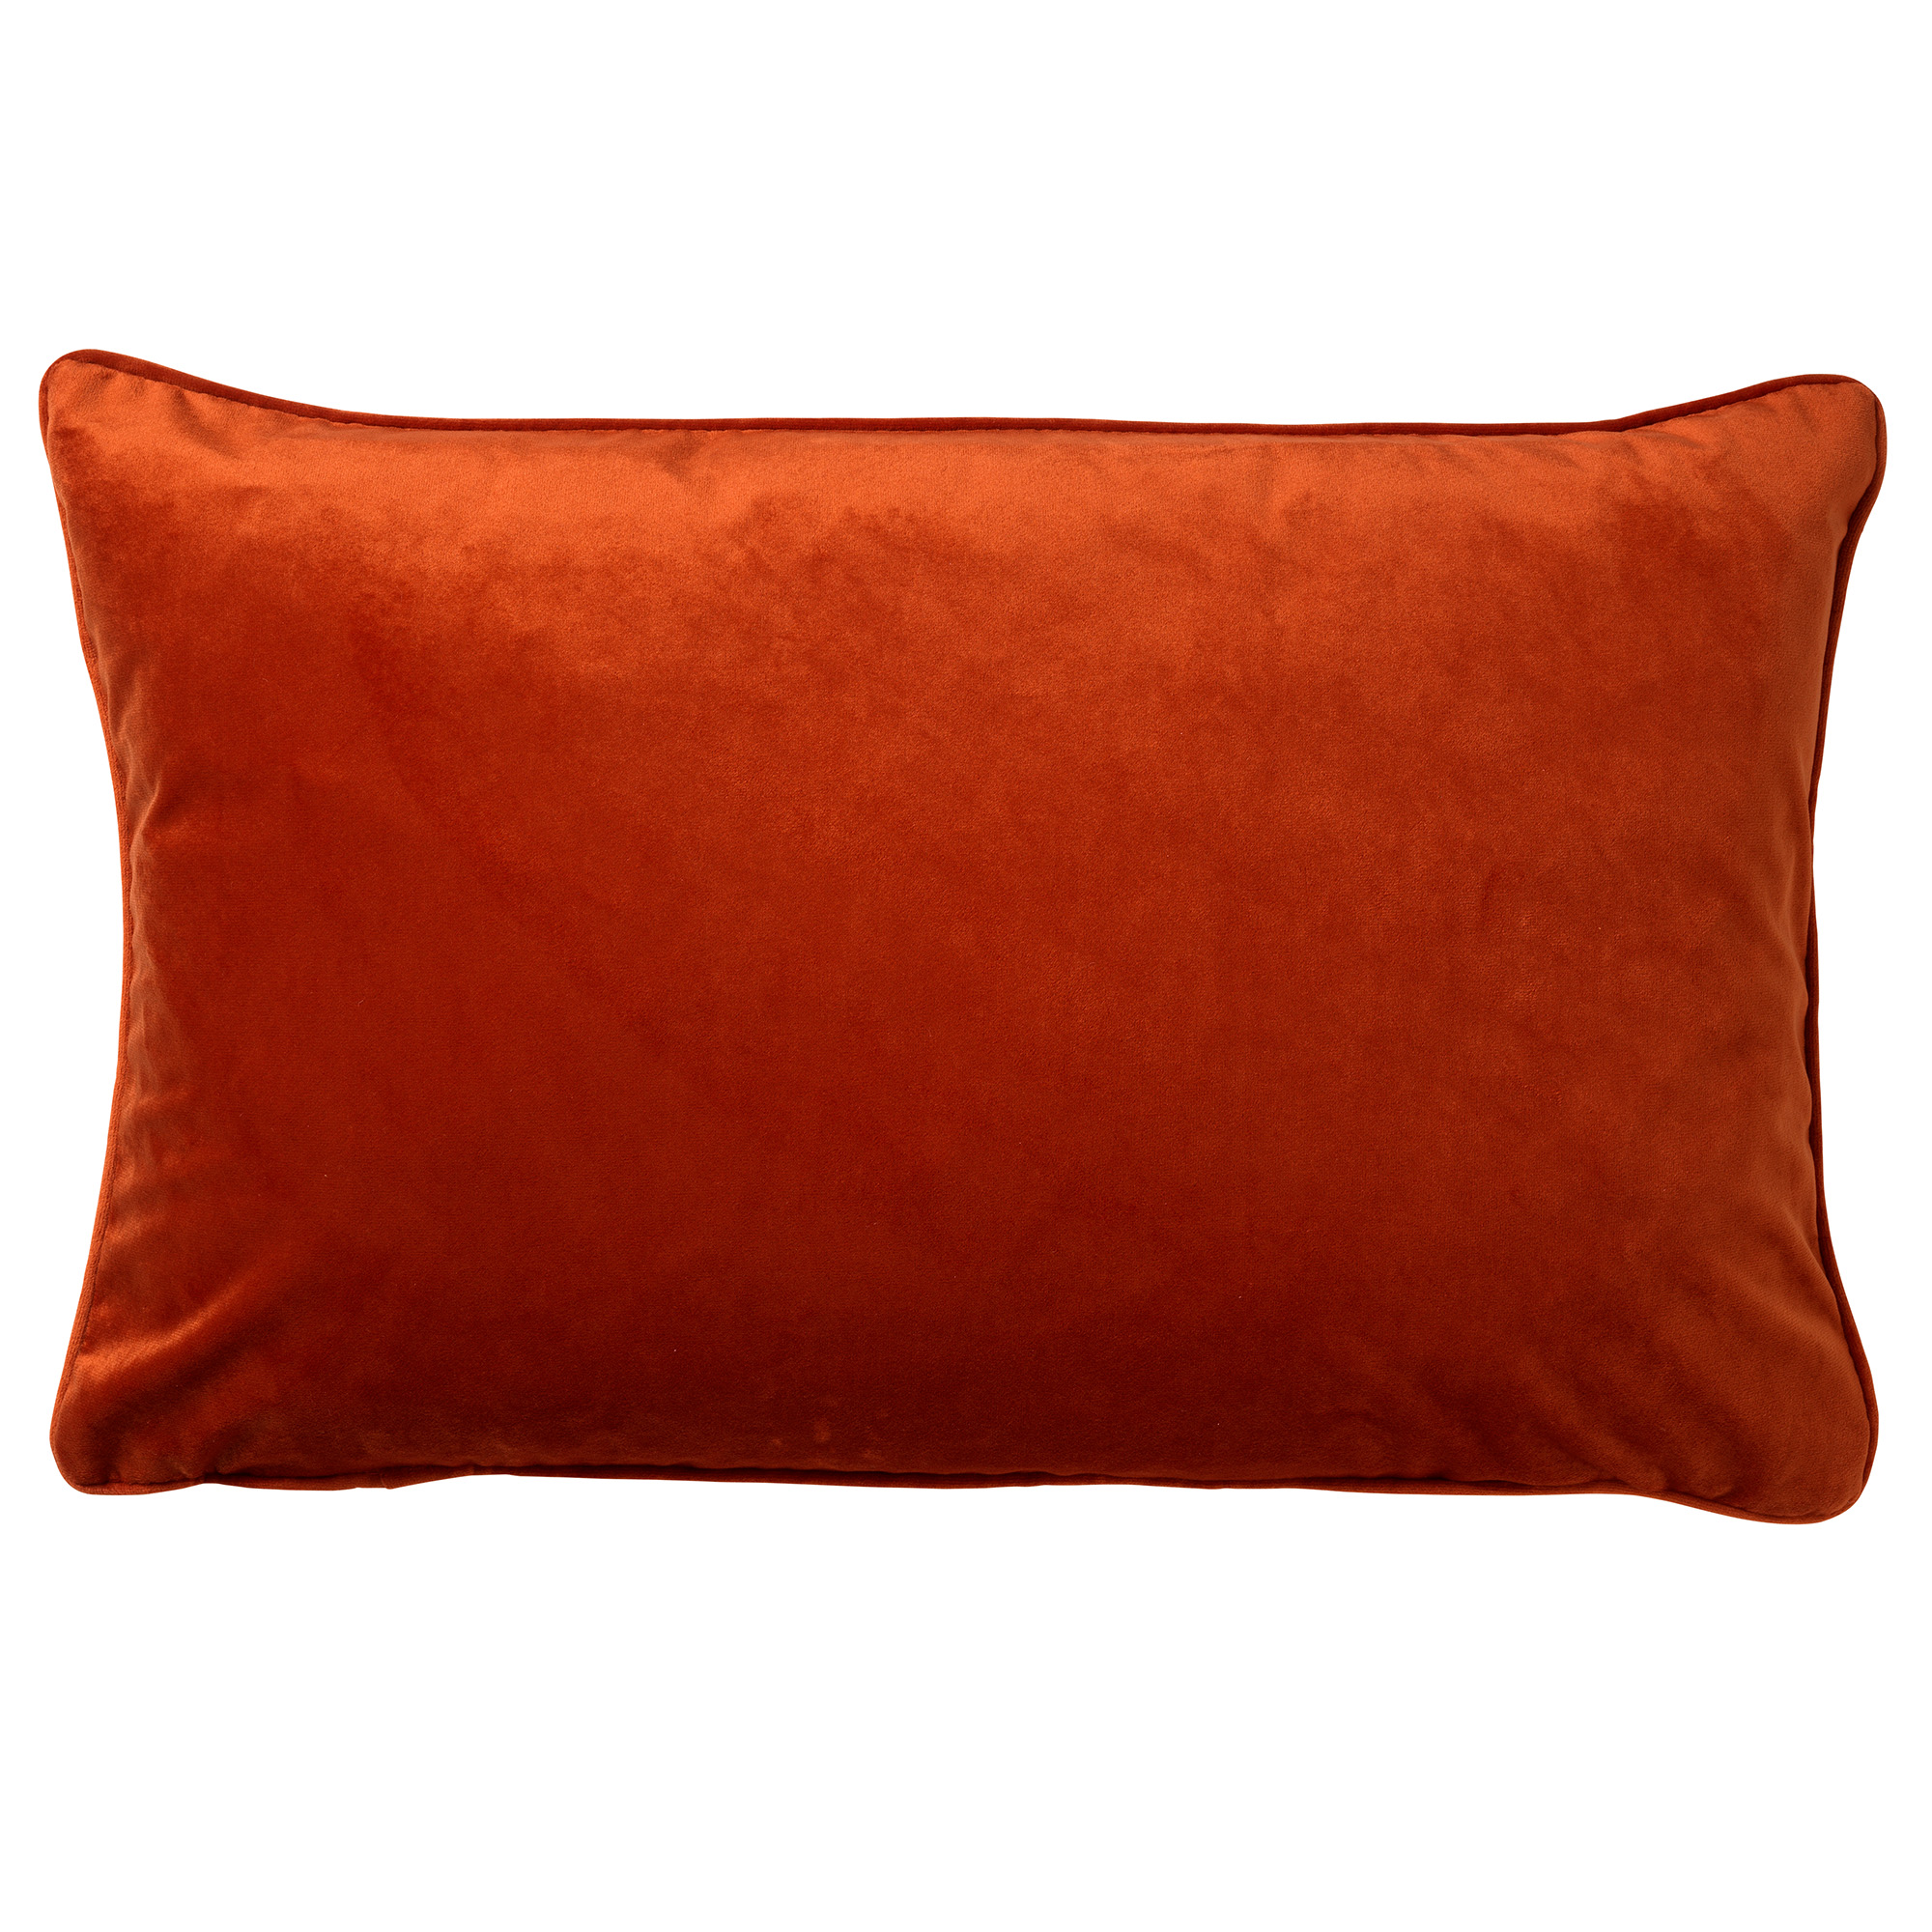 FINN - Cushion cover 40x60 cm Potters Clay - orange-terracotta